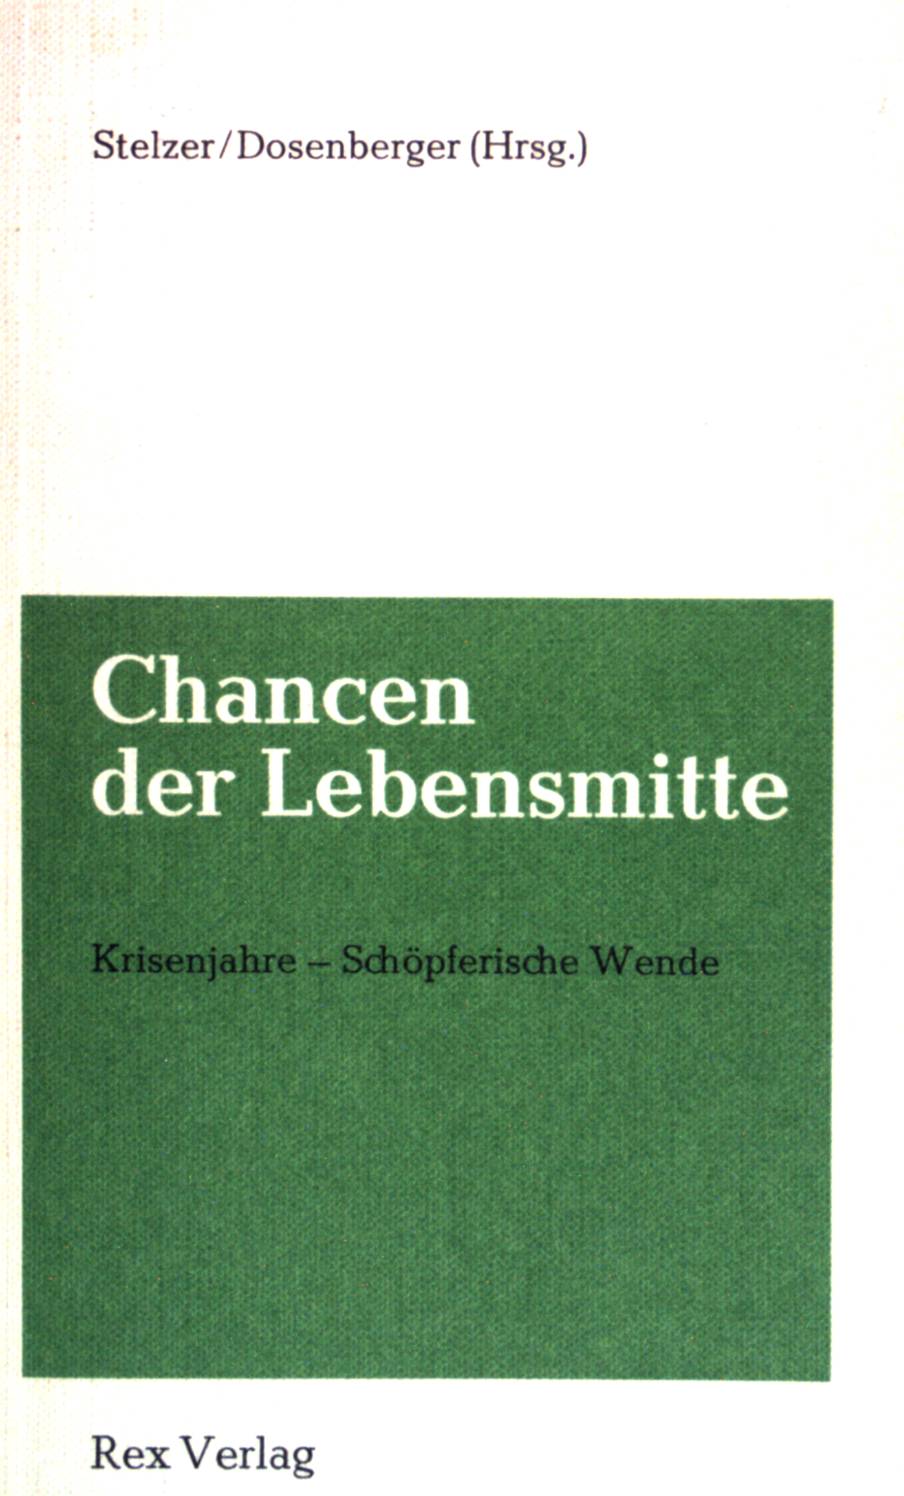 Chancen der Lebensmitte. - Stelzer, Karl [Hrsg.] und Anton Dosenberger